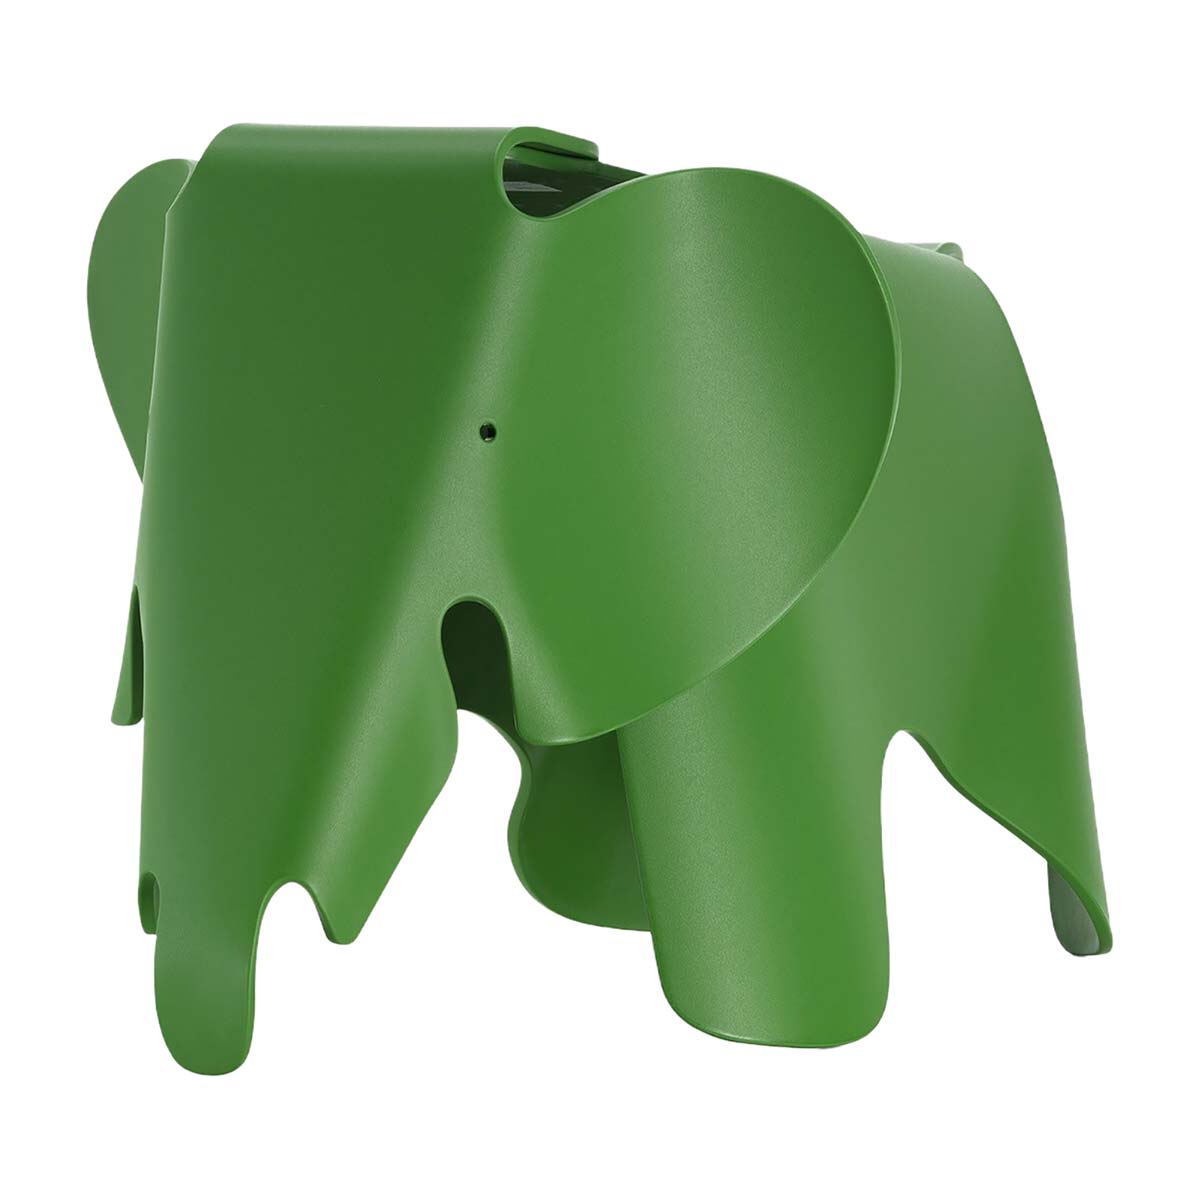 Слон Имса от Vitra, дизайн Чарльза и Рэя Имса